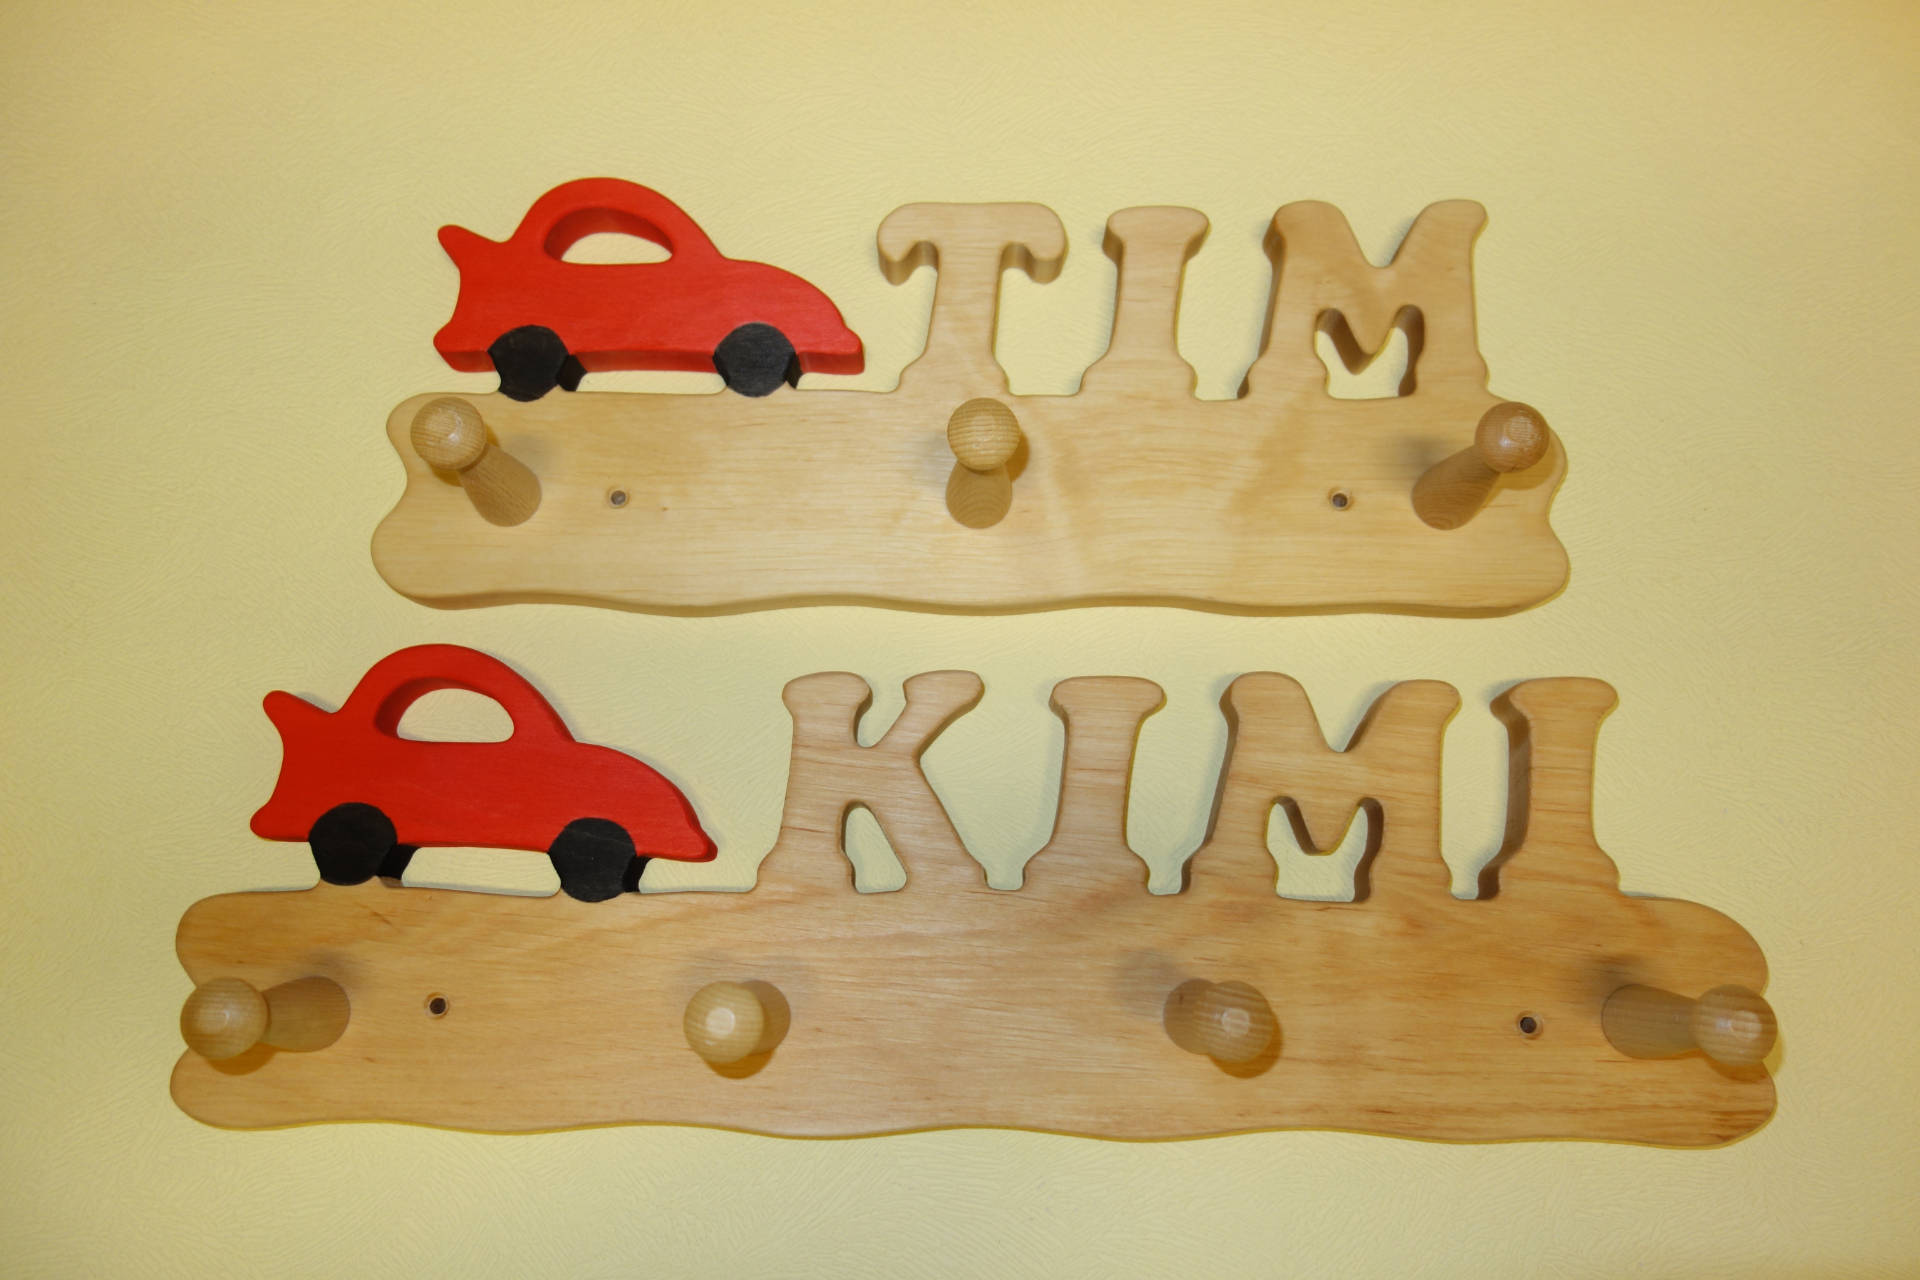 Garderobe mit Name Tim und Kimi